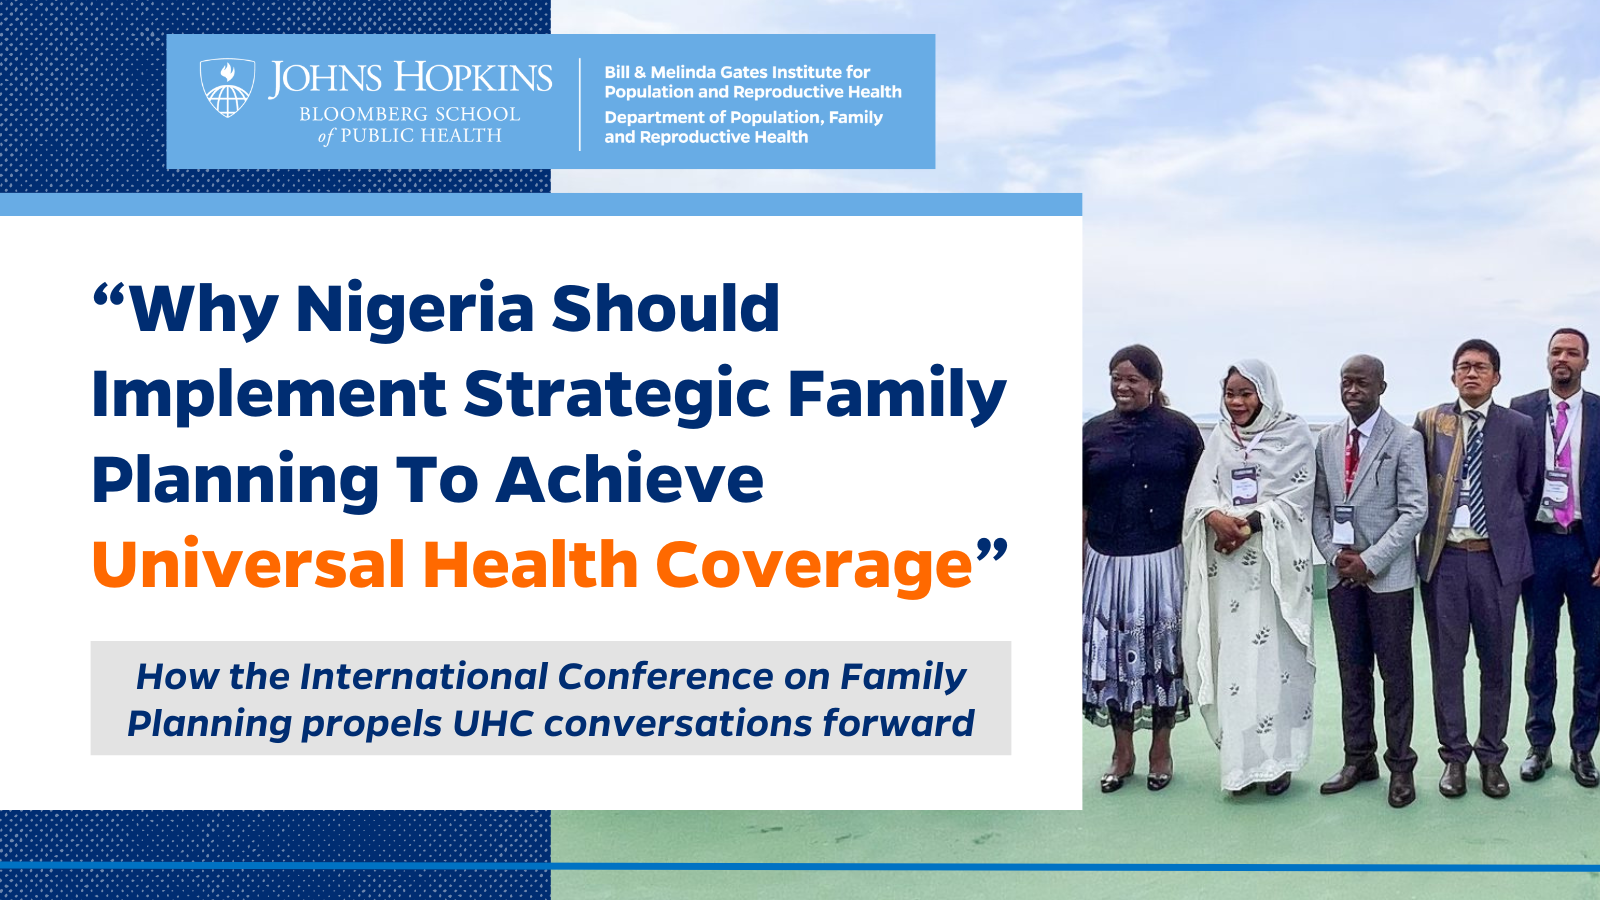 Utilizar la planificación familiar para lograr la cobertura sanitaria universal